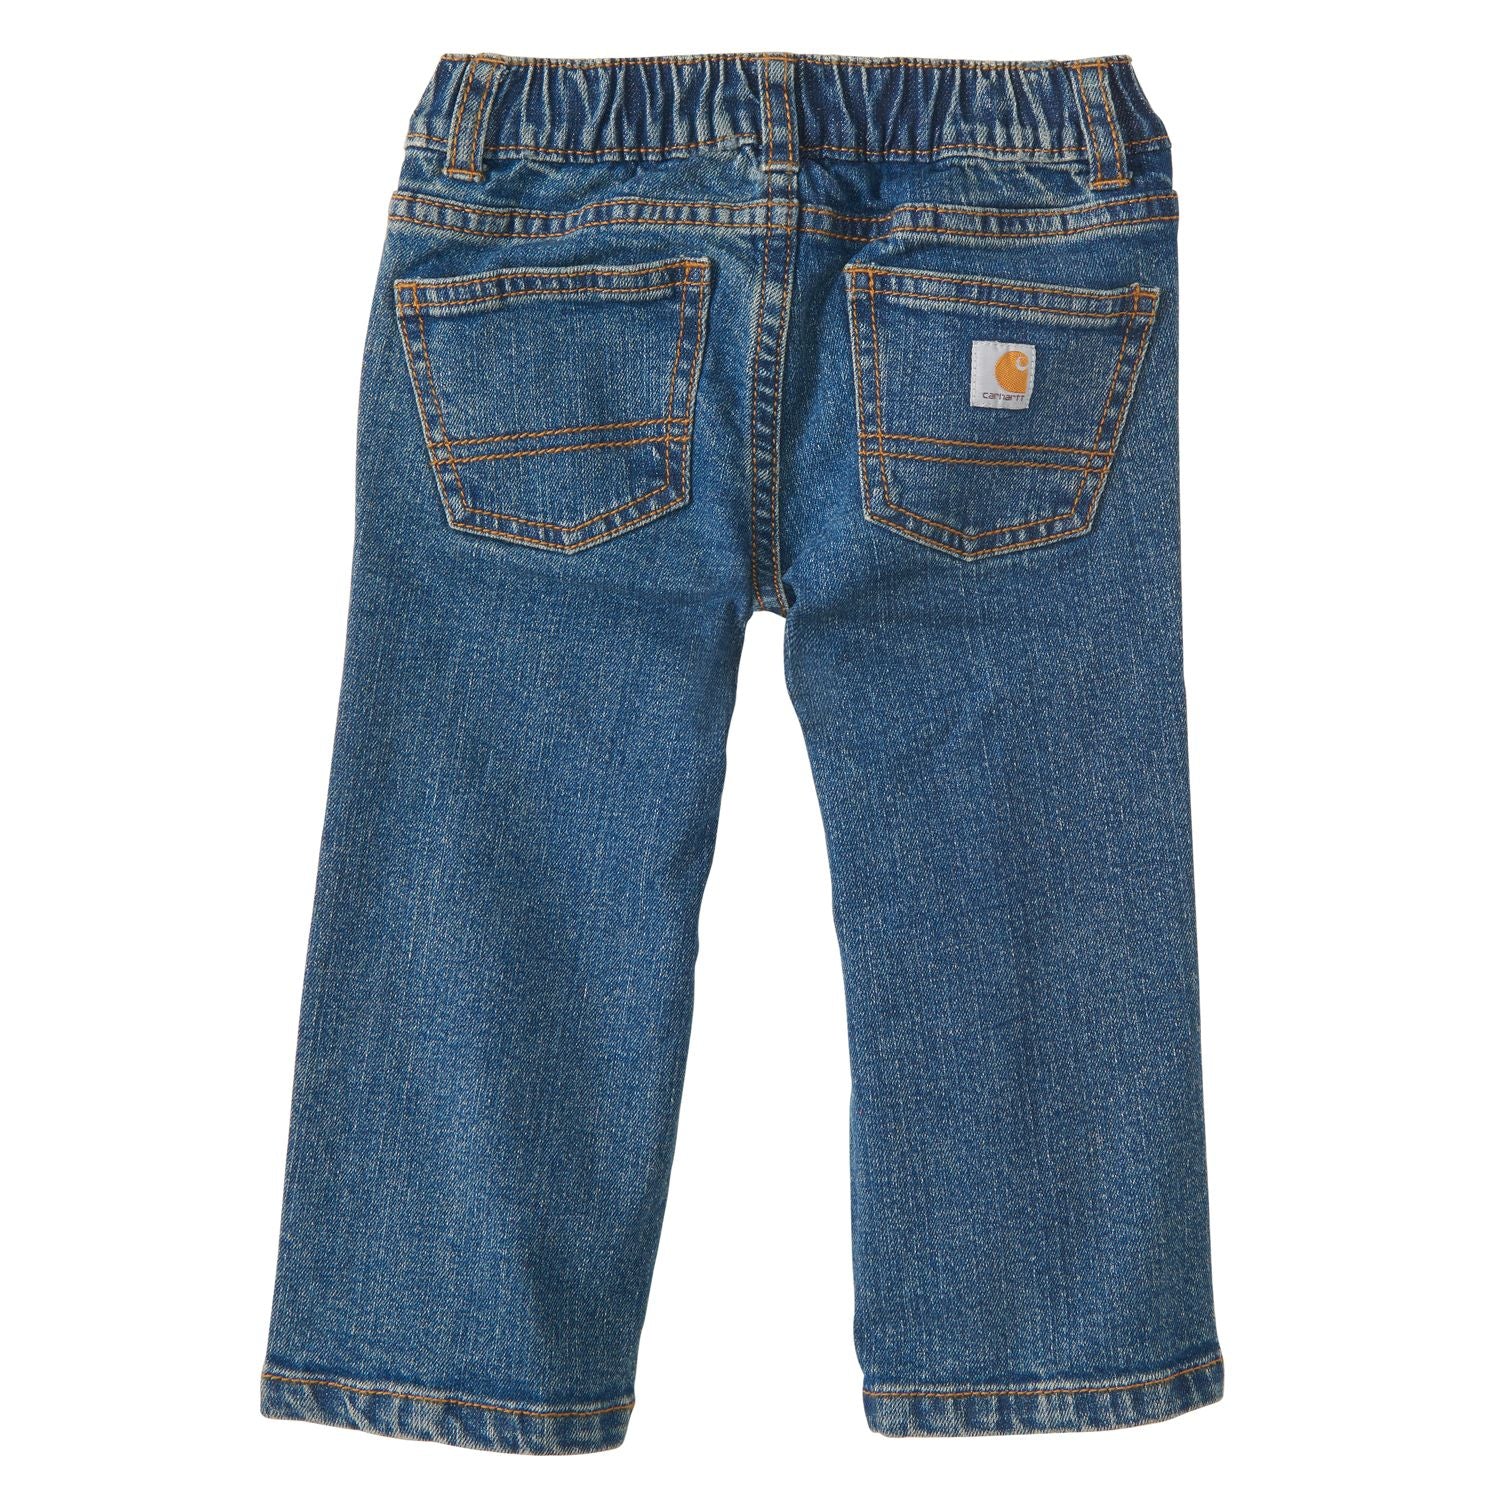 Carhartt Toddler Boy Blue Jeans CK8376 – Good's Store Online